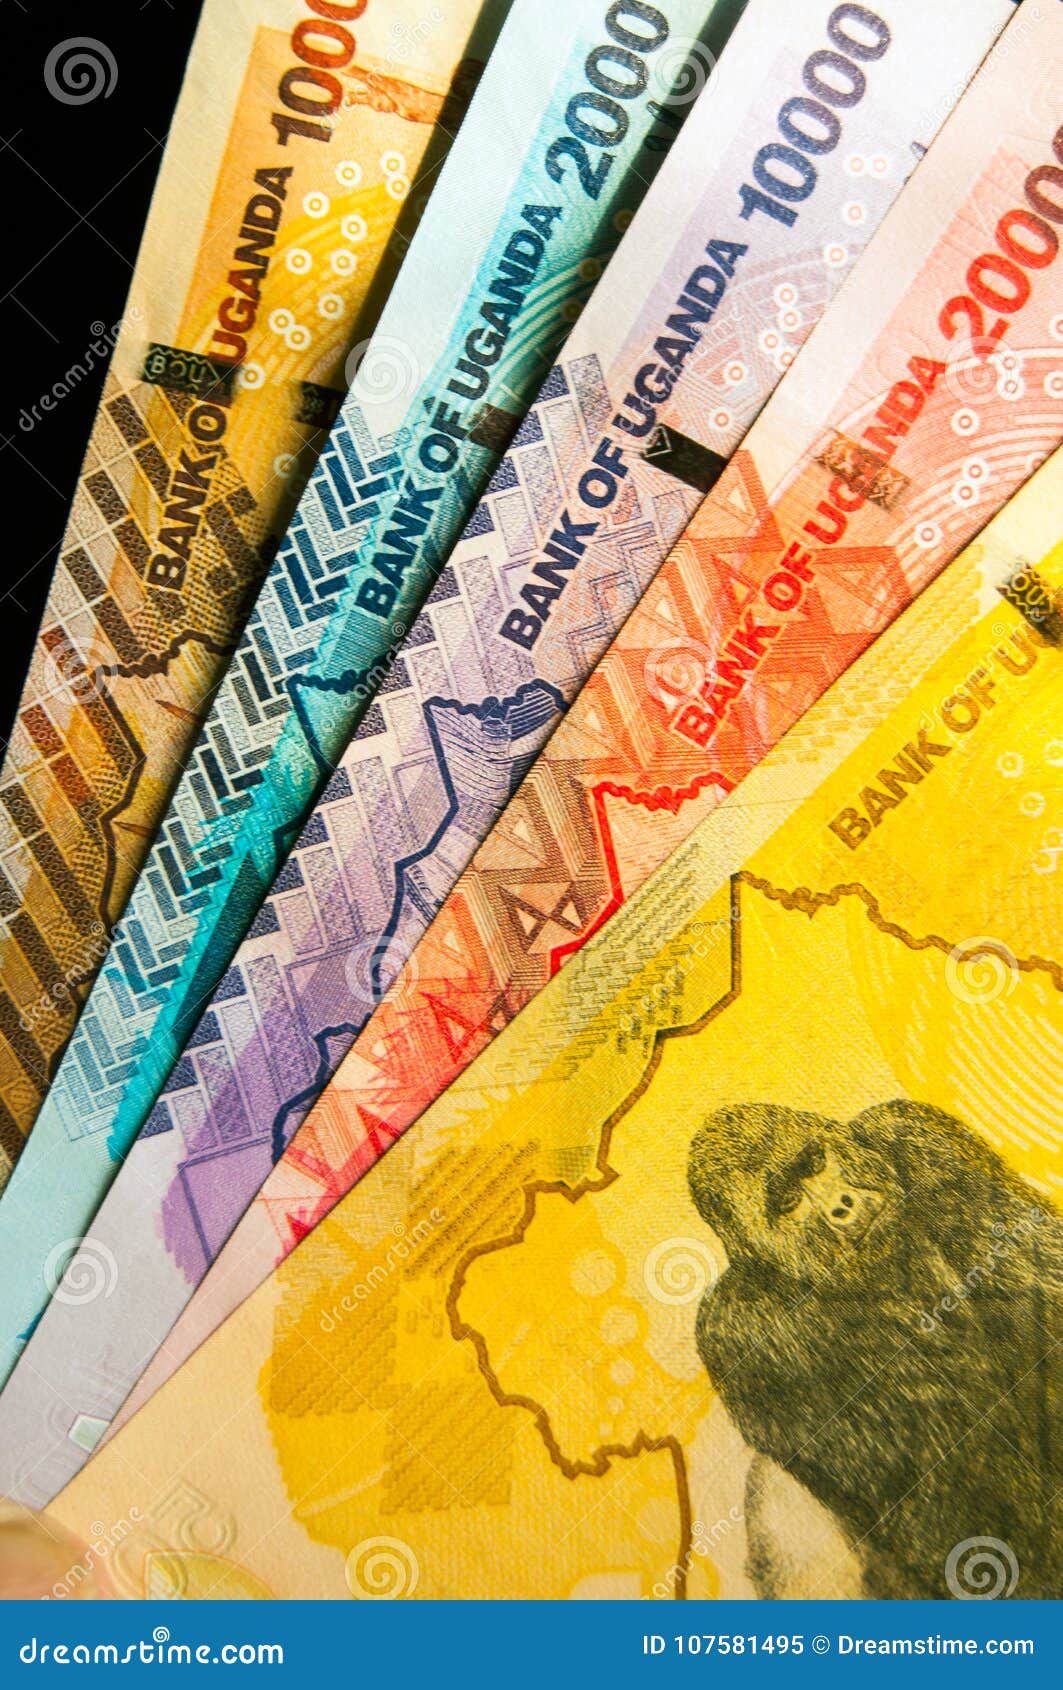 five ugandan monetary bank notes